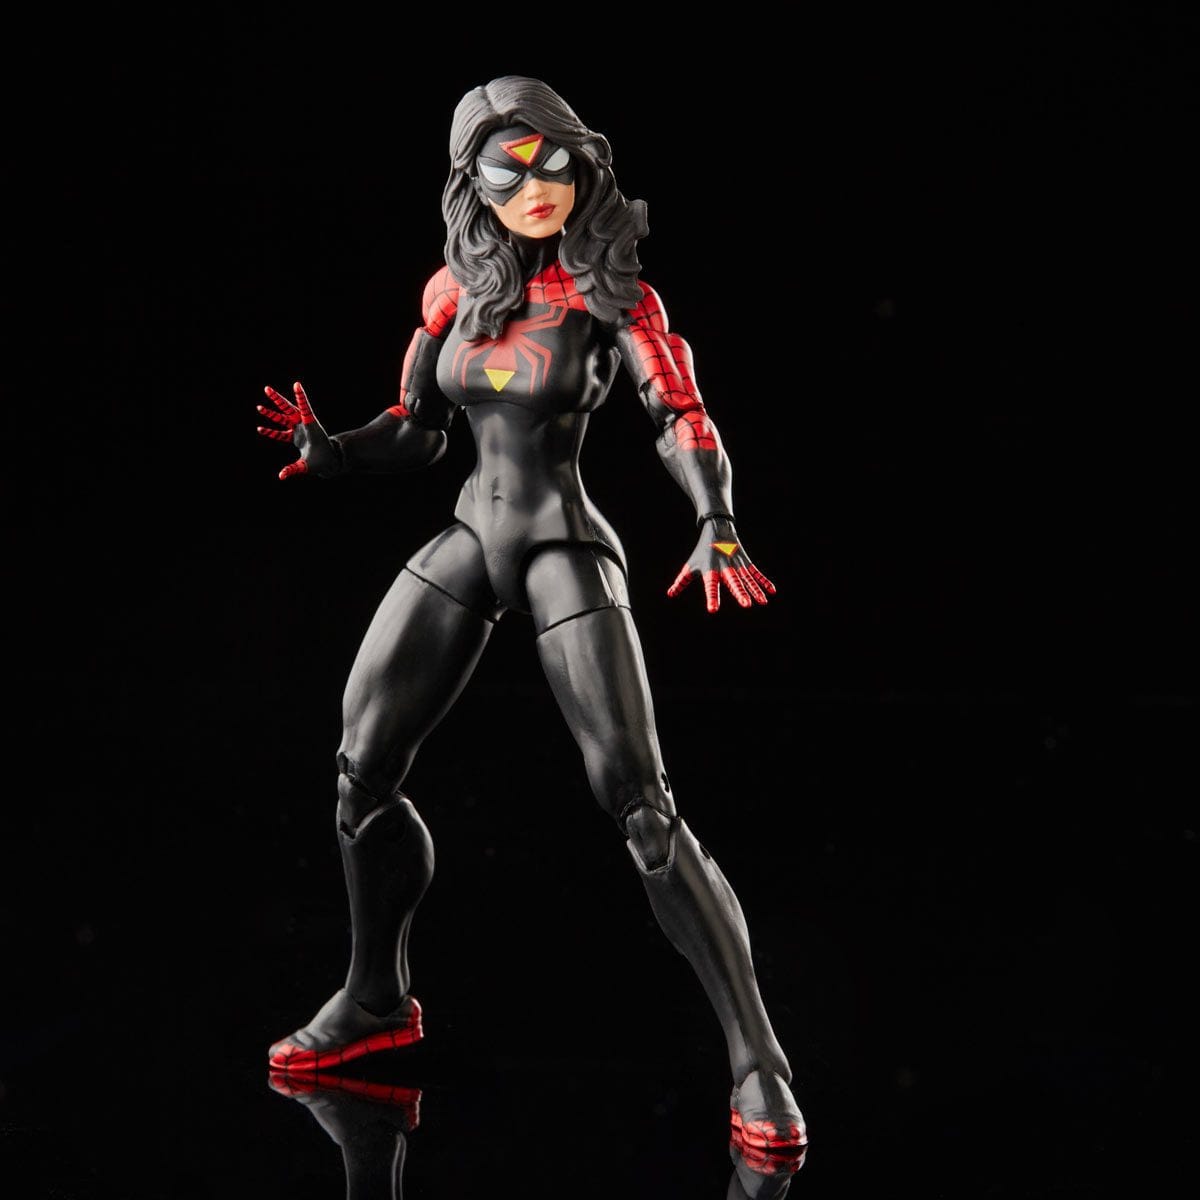 Spider-Man Retro Marvel Legends Jessica Drew Spider-Woman 6-Inch Action Figure